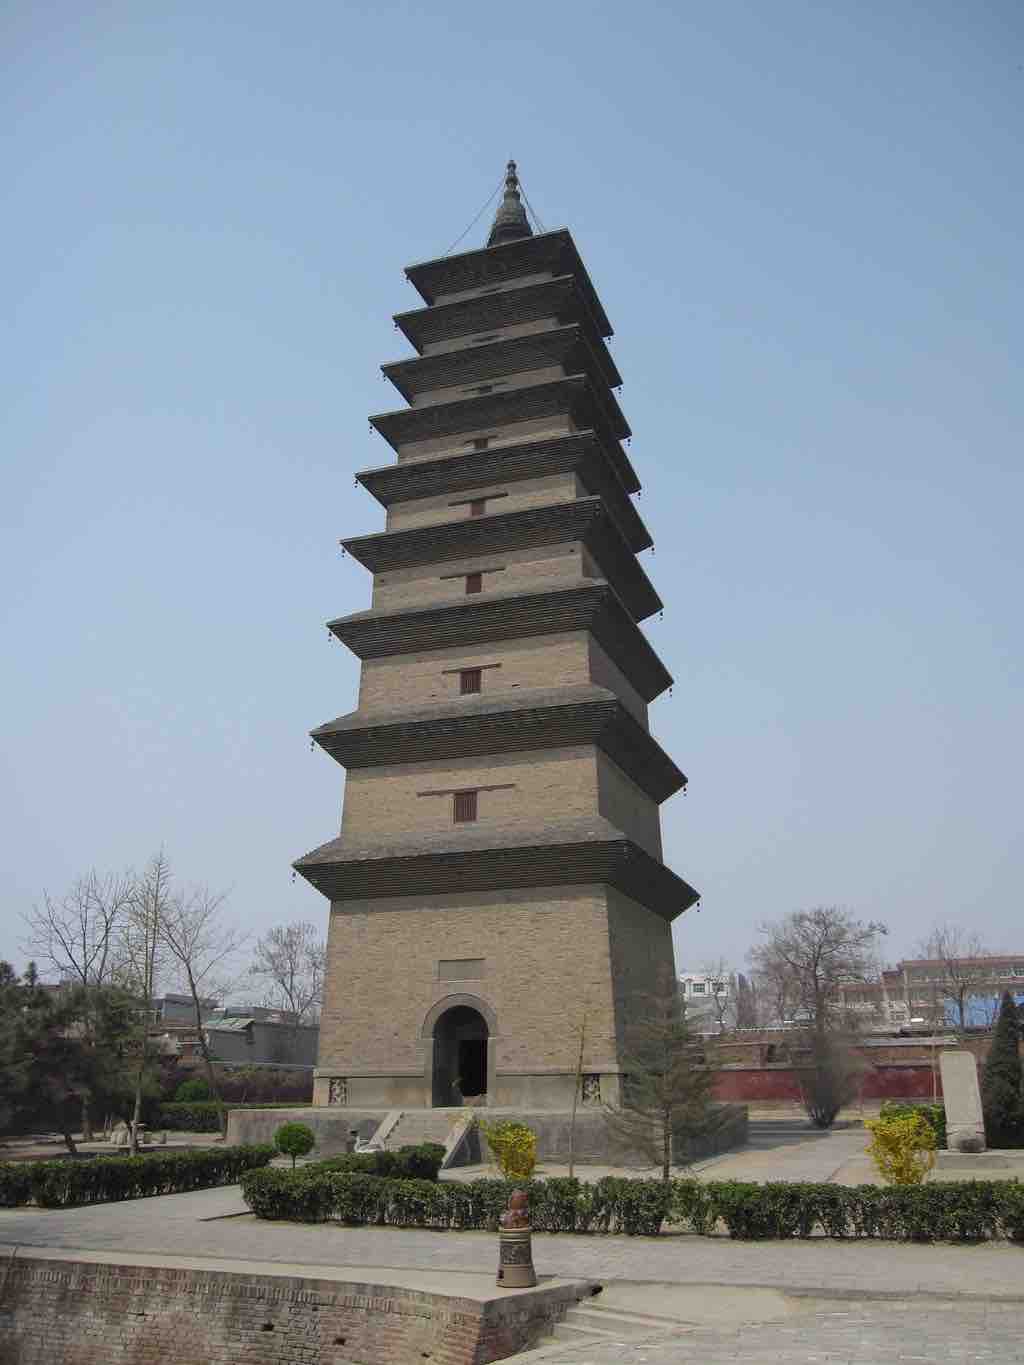 The Xumi Pagoda